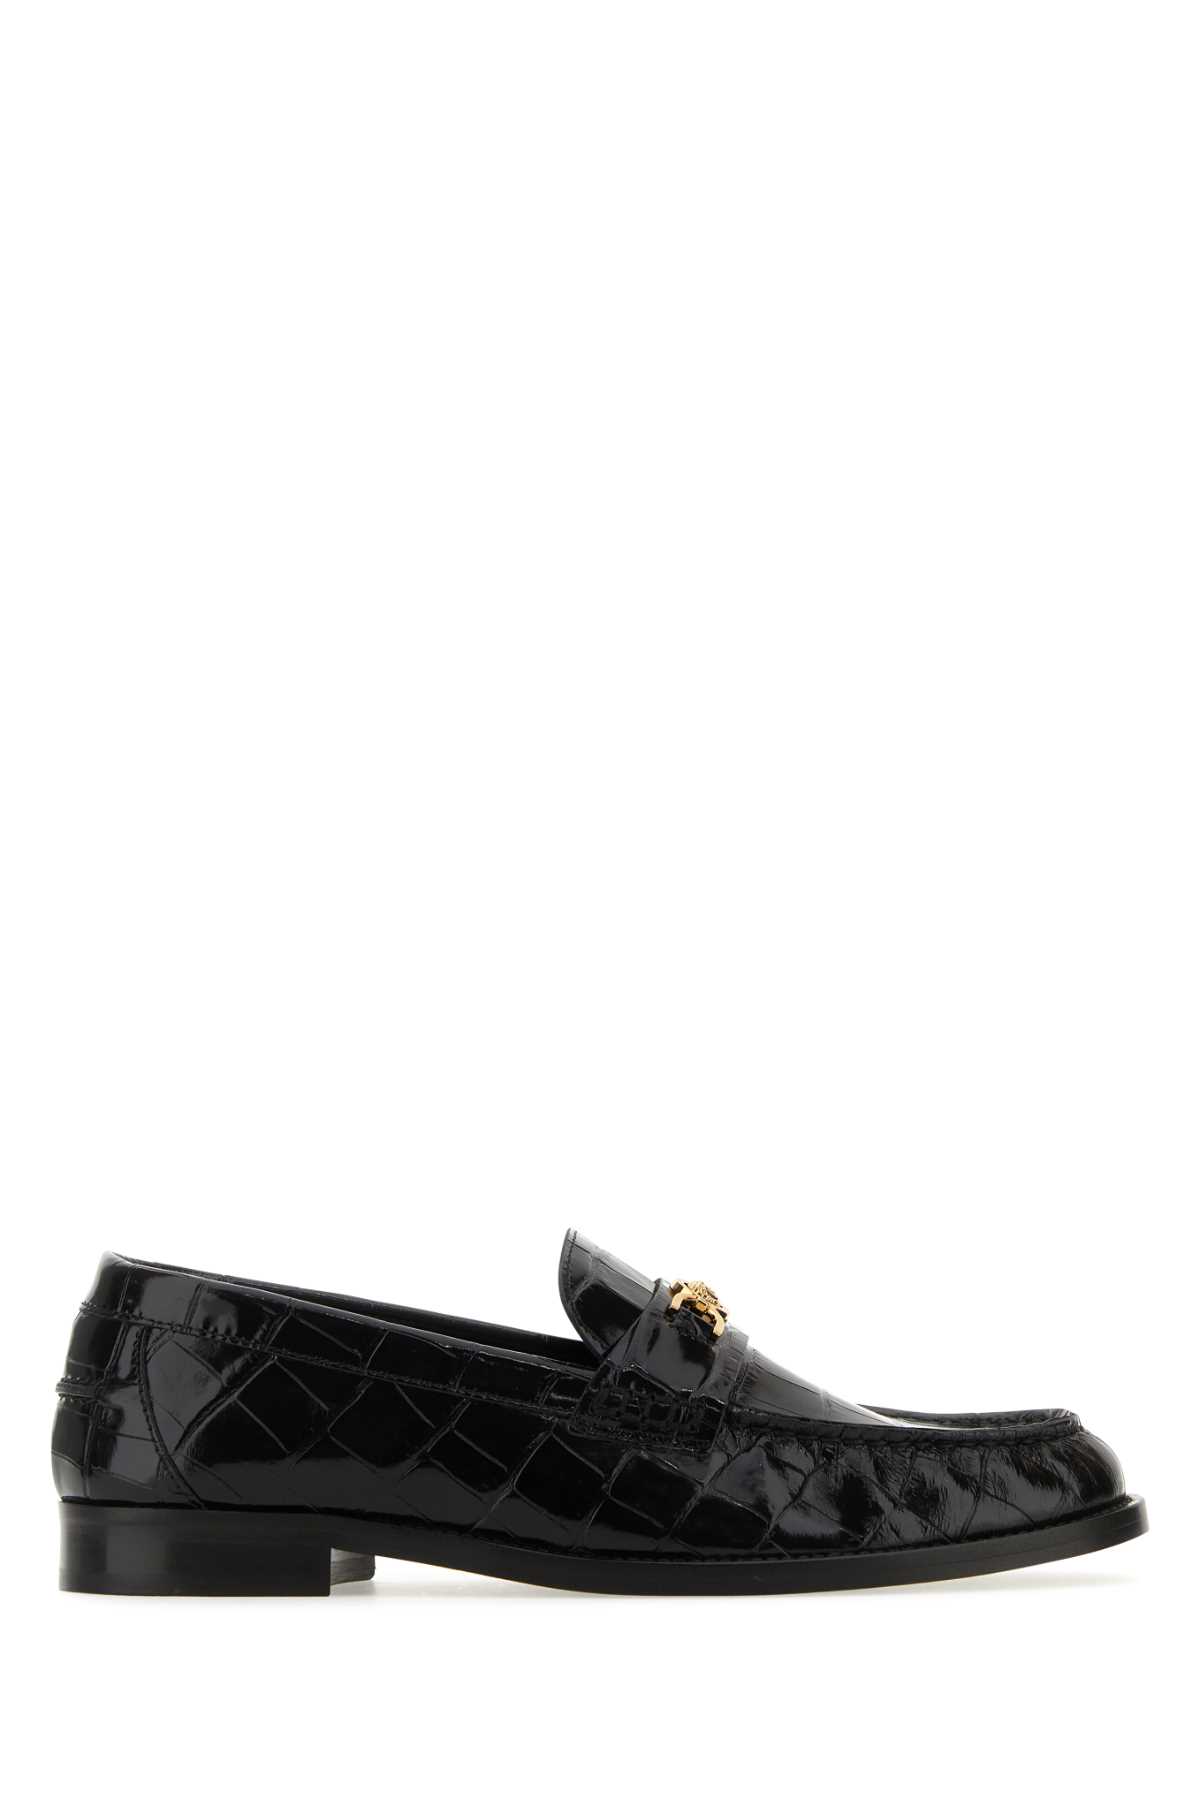 Shop Versace Black Leather Medusa 95 Loafers In 1b00v